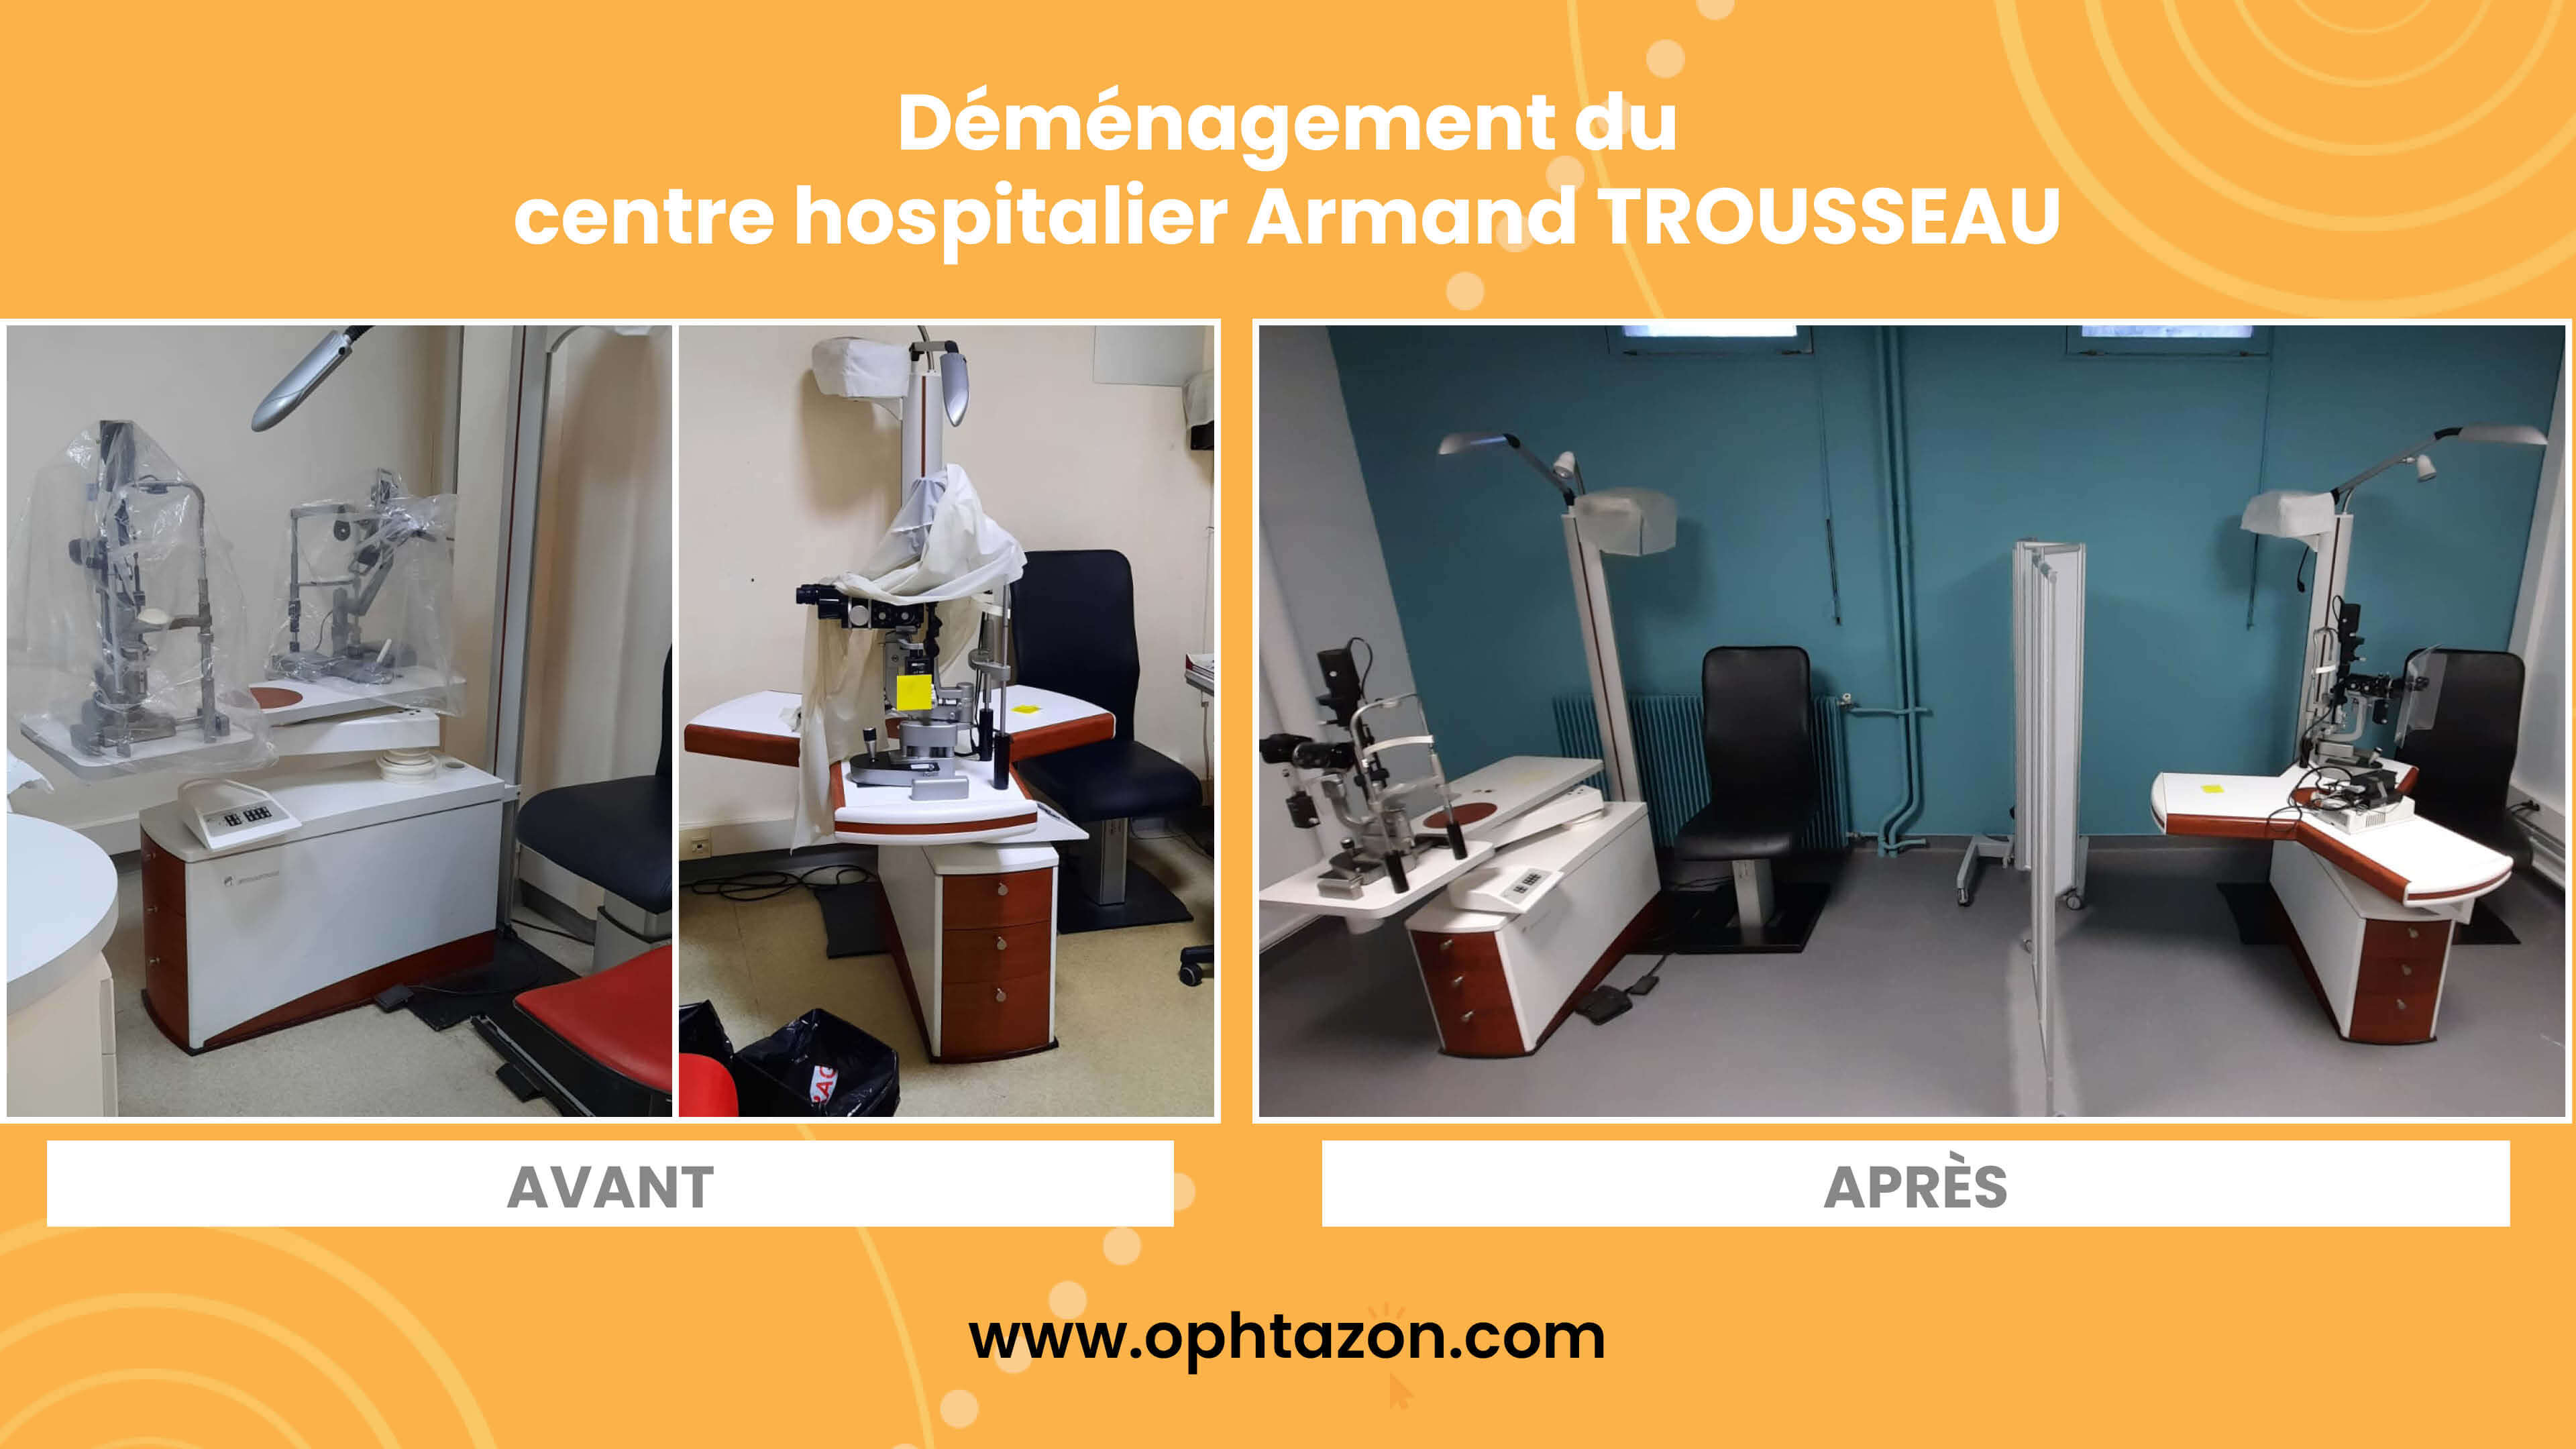 Déménagement du centre hospitalier Armand Trousseau